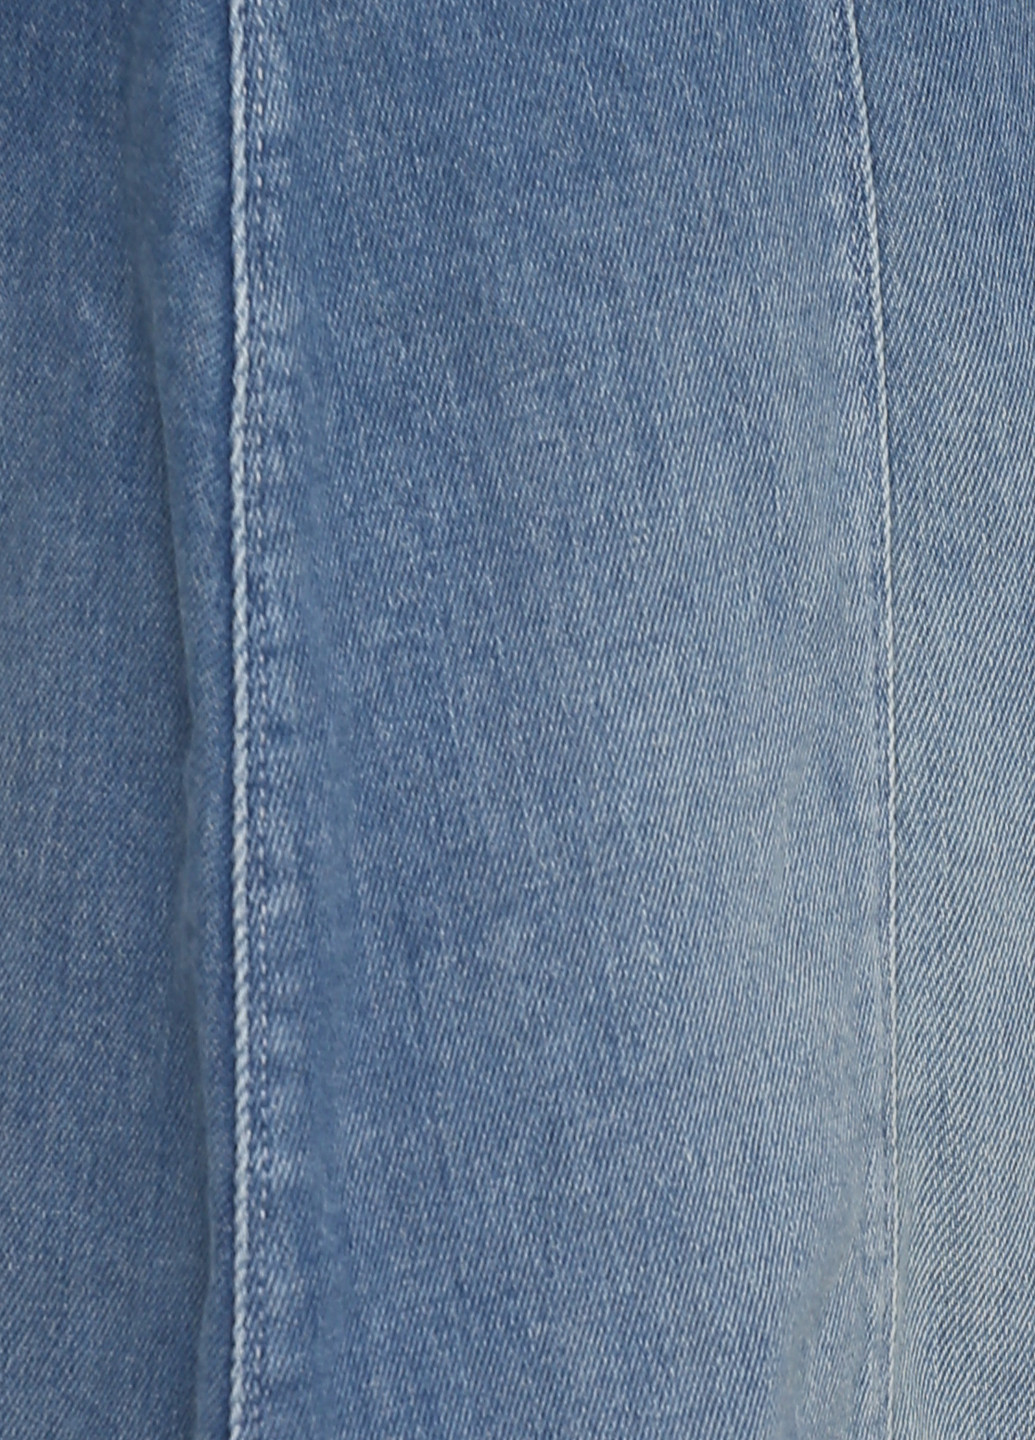 Синяя джинсовая однотонная юбка IVY а-силуэта (трапеция)